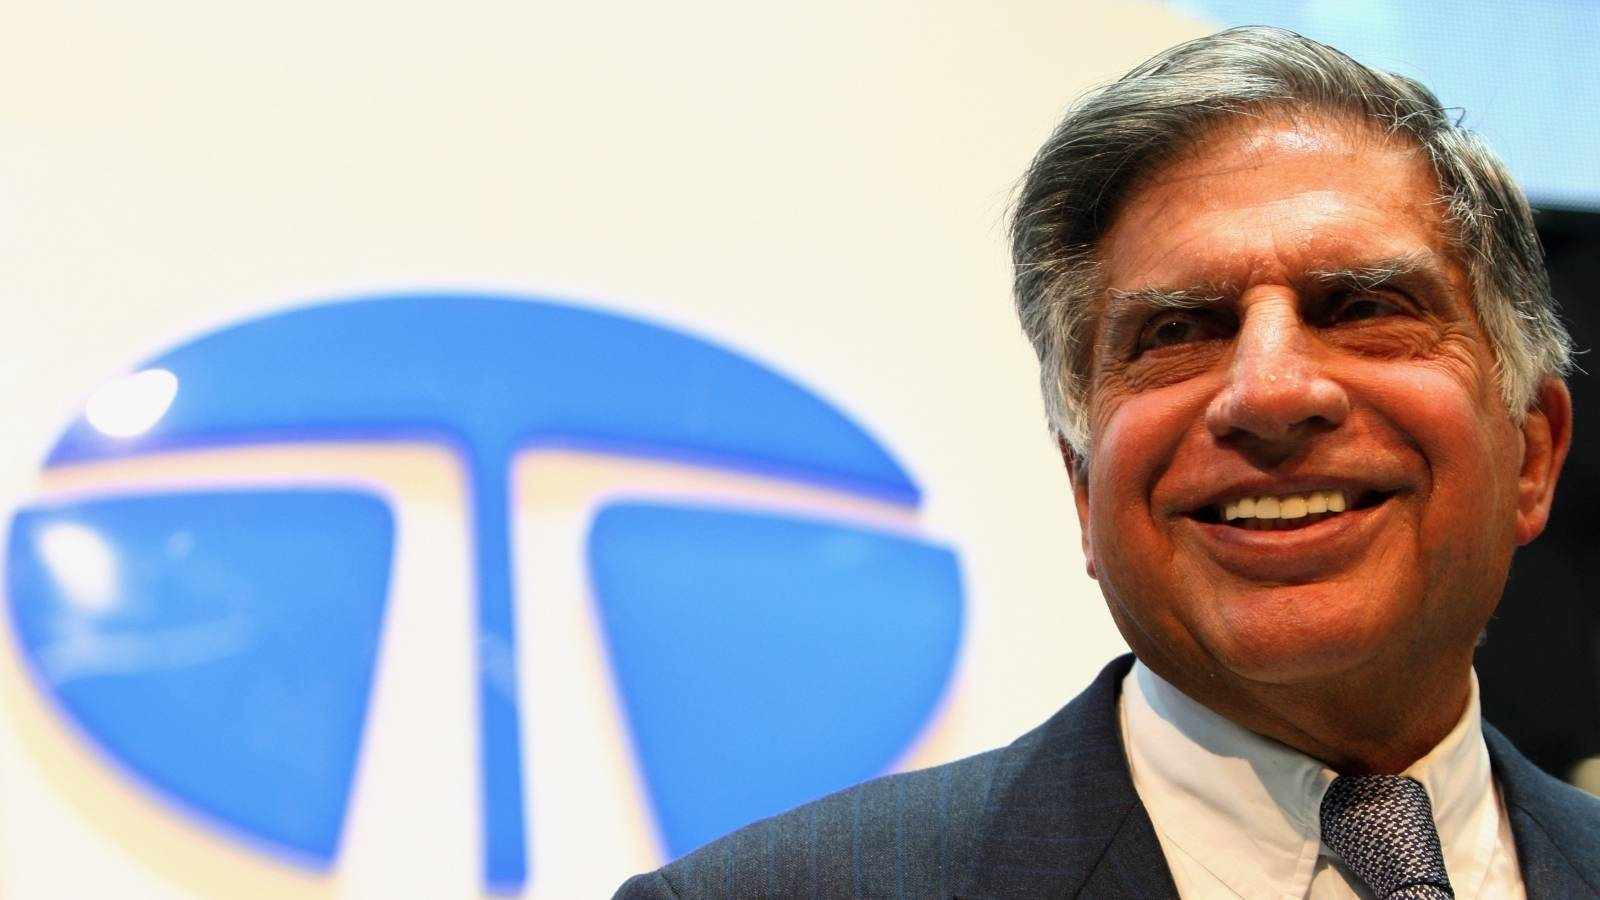 Ratan Tata को उनके शांत स्वभाव के लिए जाना जाता है। टाटा ग्रुप के अंदर लगभग 100 कंपनियां शामिल होती हैं। जिसमें छोटी से छोटी और बड़ी से बड़ी चीज़ों का निर्माण किया जाता है।